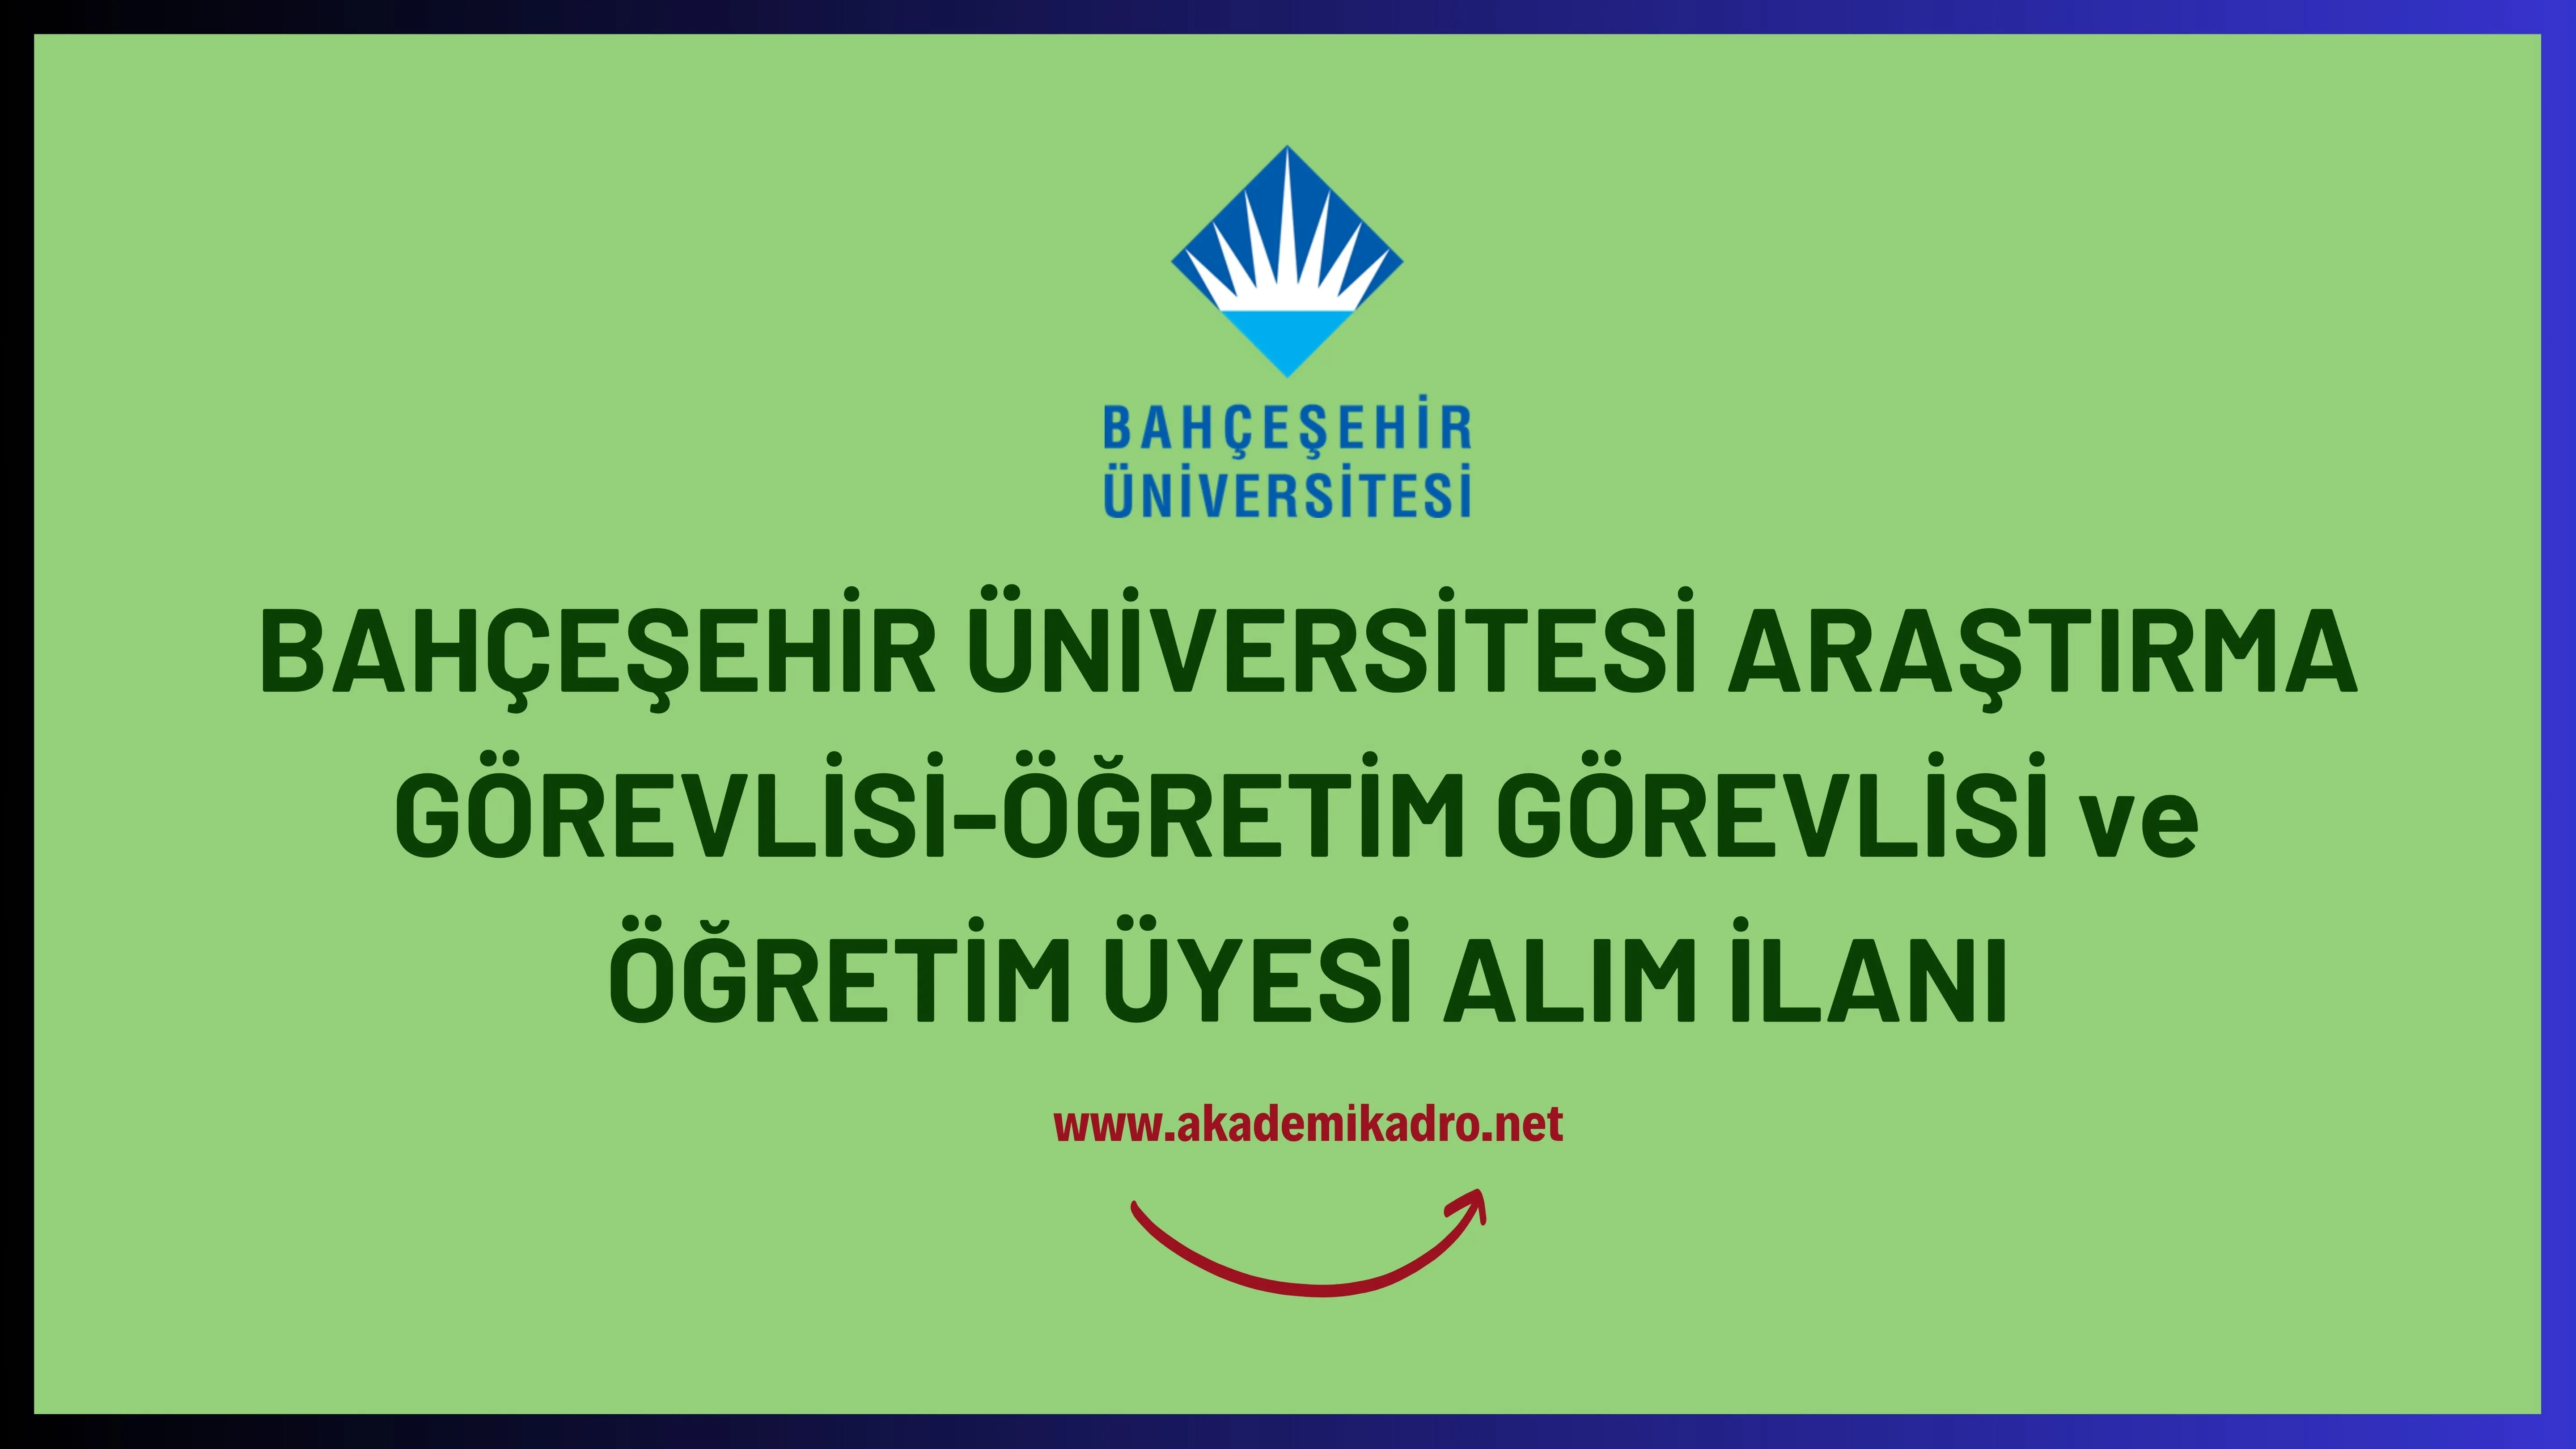 Bahçeşehir Üniversitesi Araştırma görevlisi, 4 Öğretim görevlisi ve 47 Öğretim üyesi alacak.